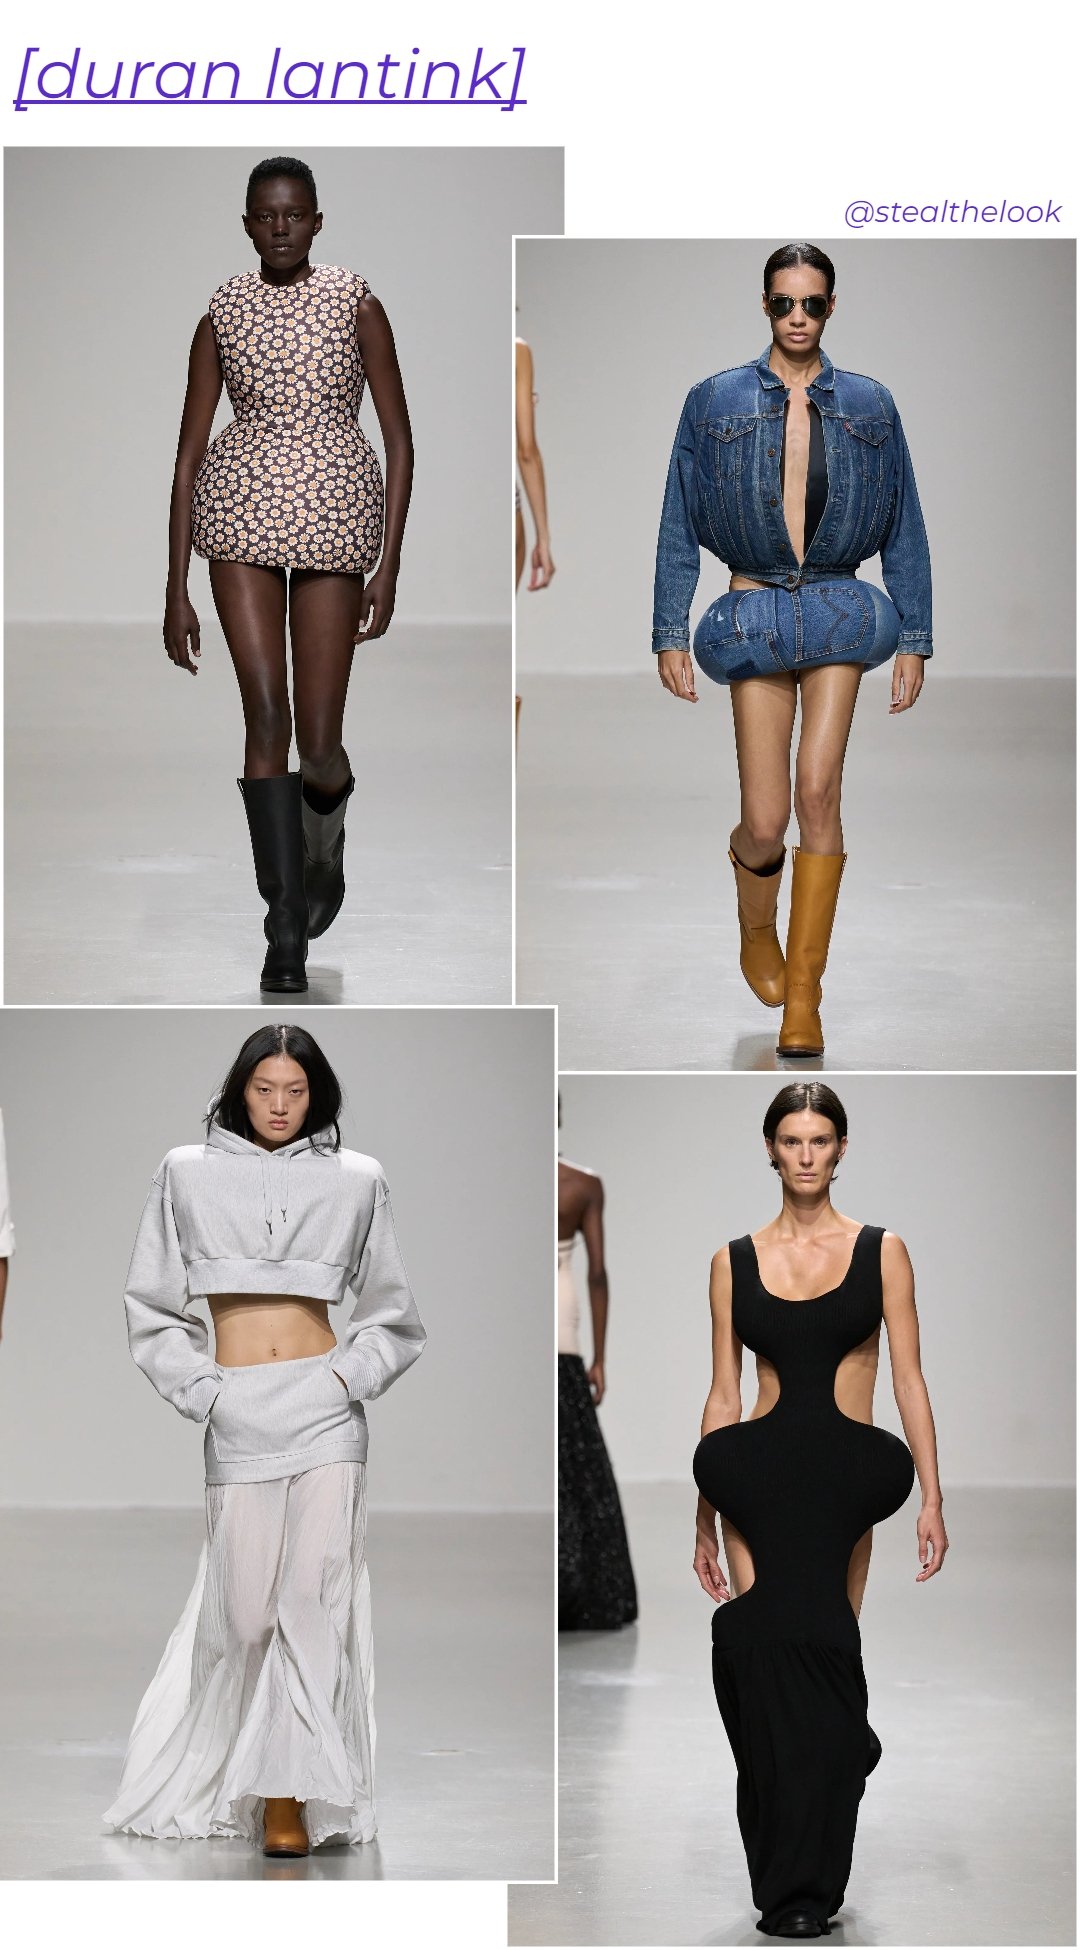 Duran Lantink - roupas diversas - tendências de moda - verão - colagem de imagens - https://stealthelook.com.br